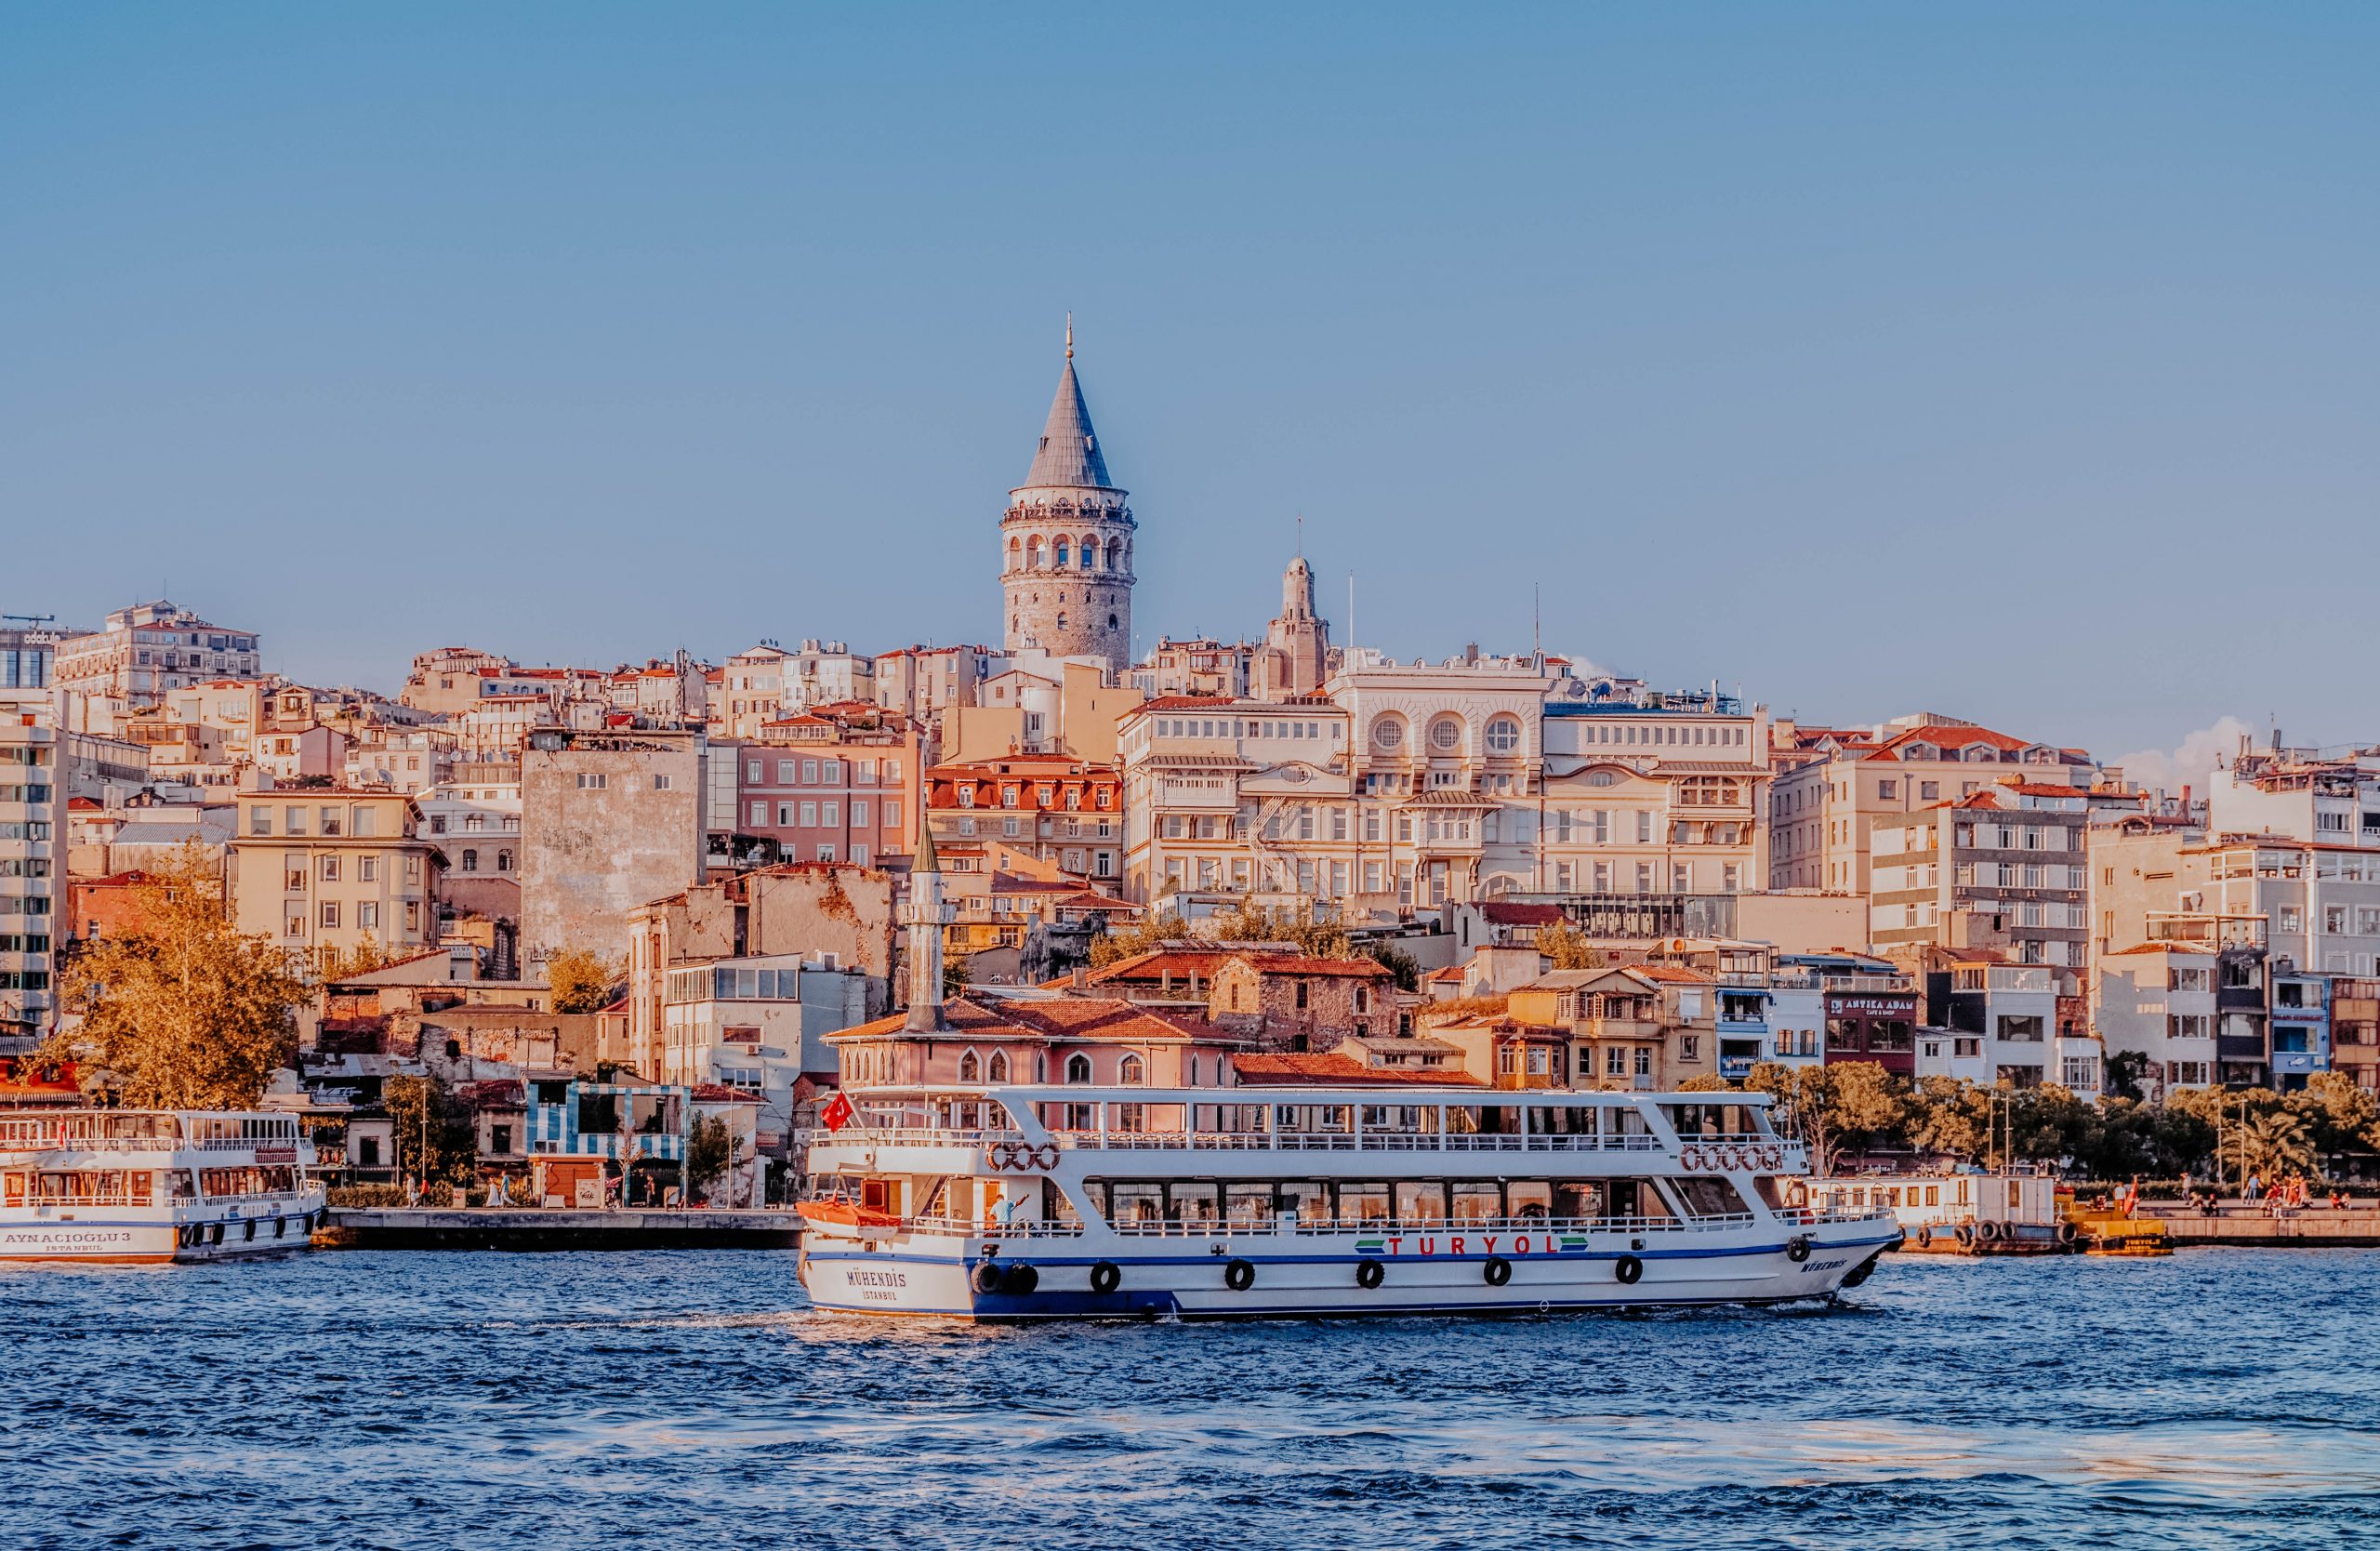 Bosphorous Cruise Istanbul scaled